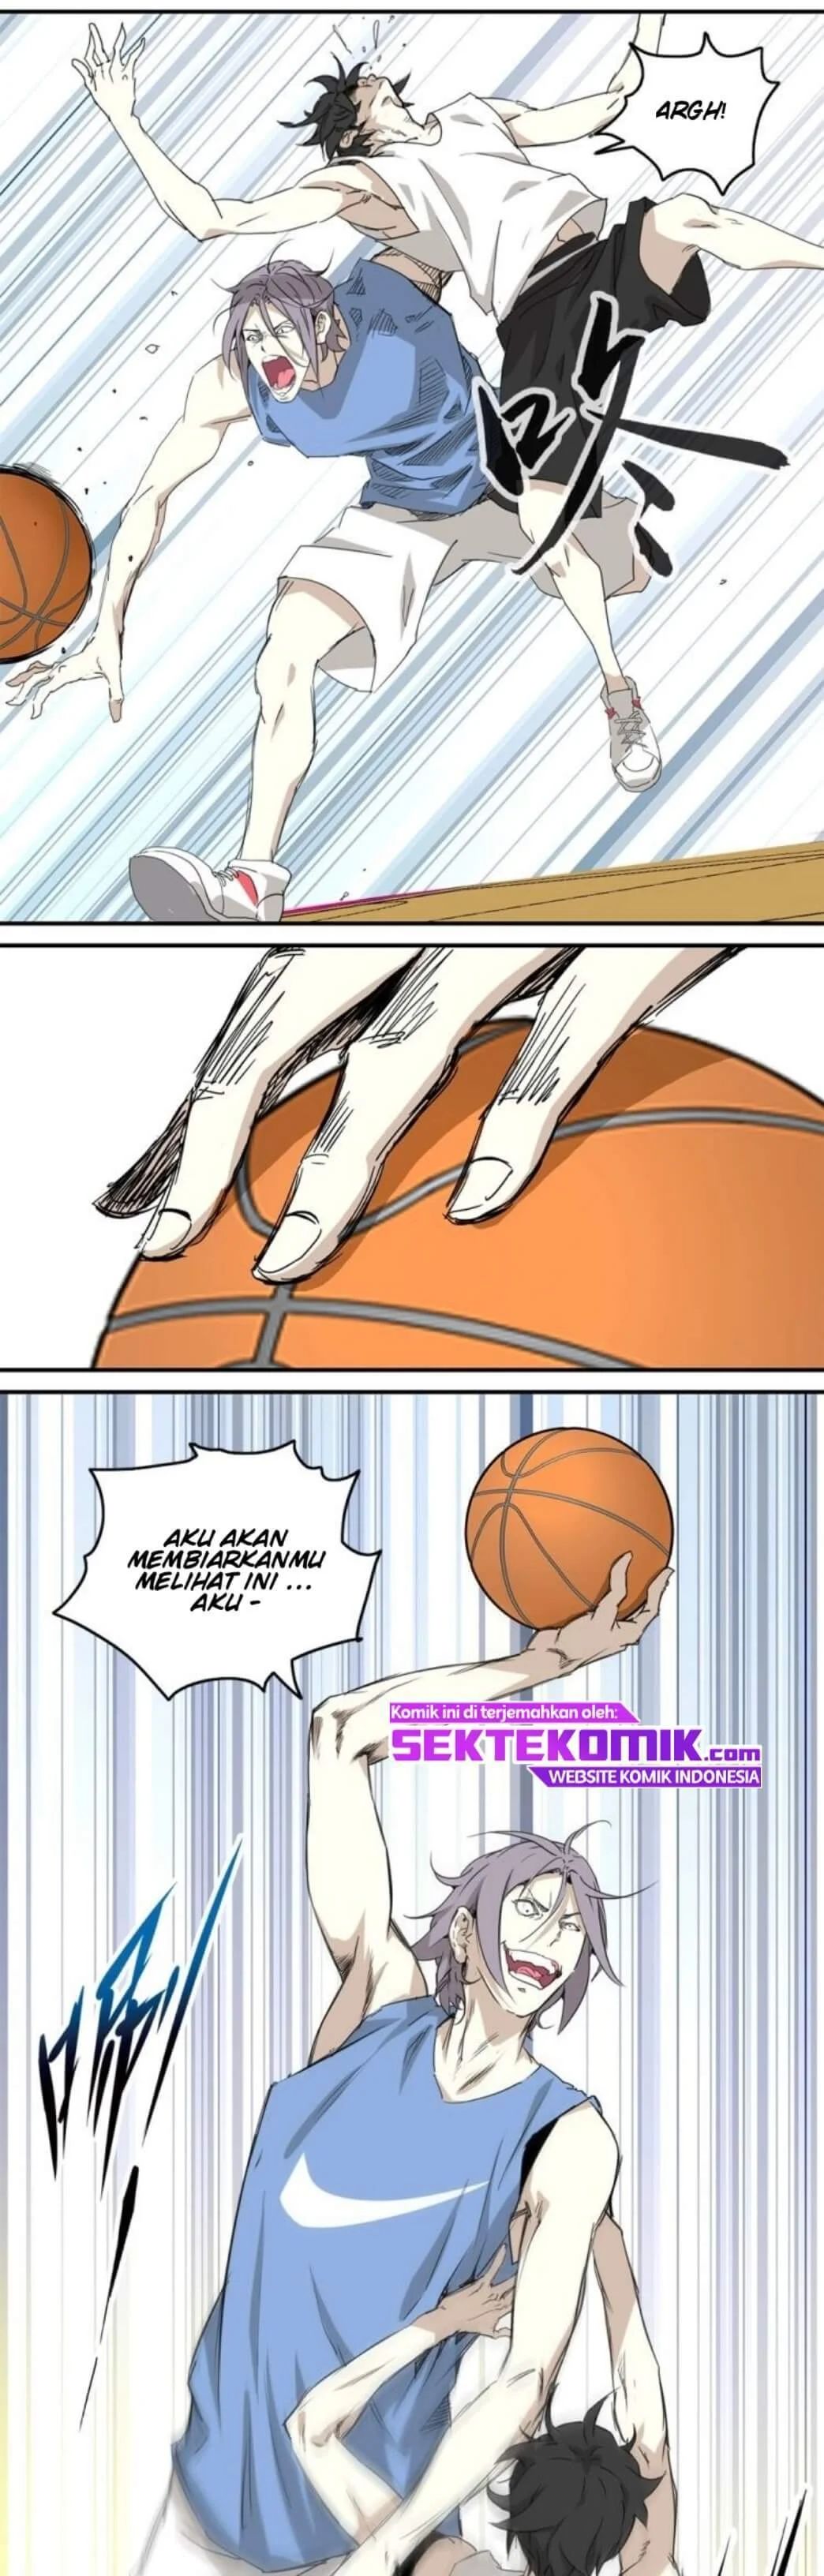 Basketball Monster Chapter 1